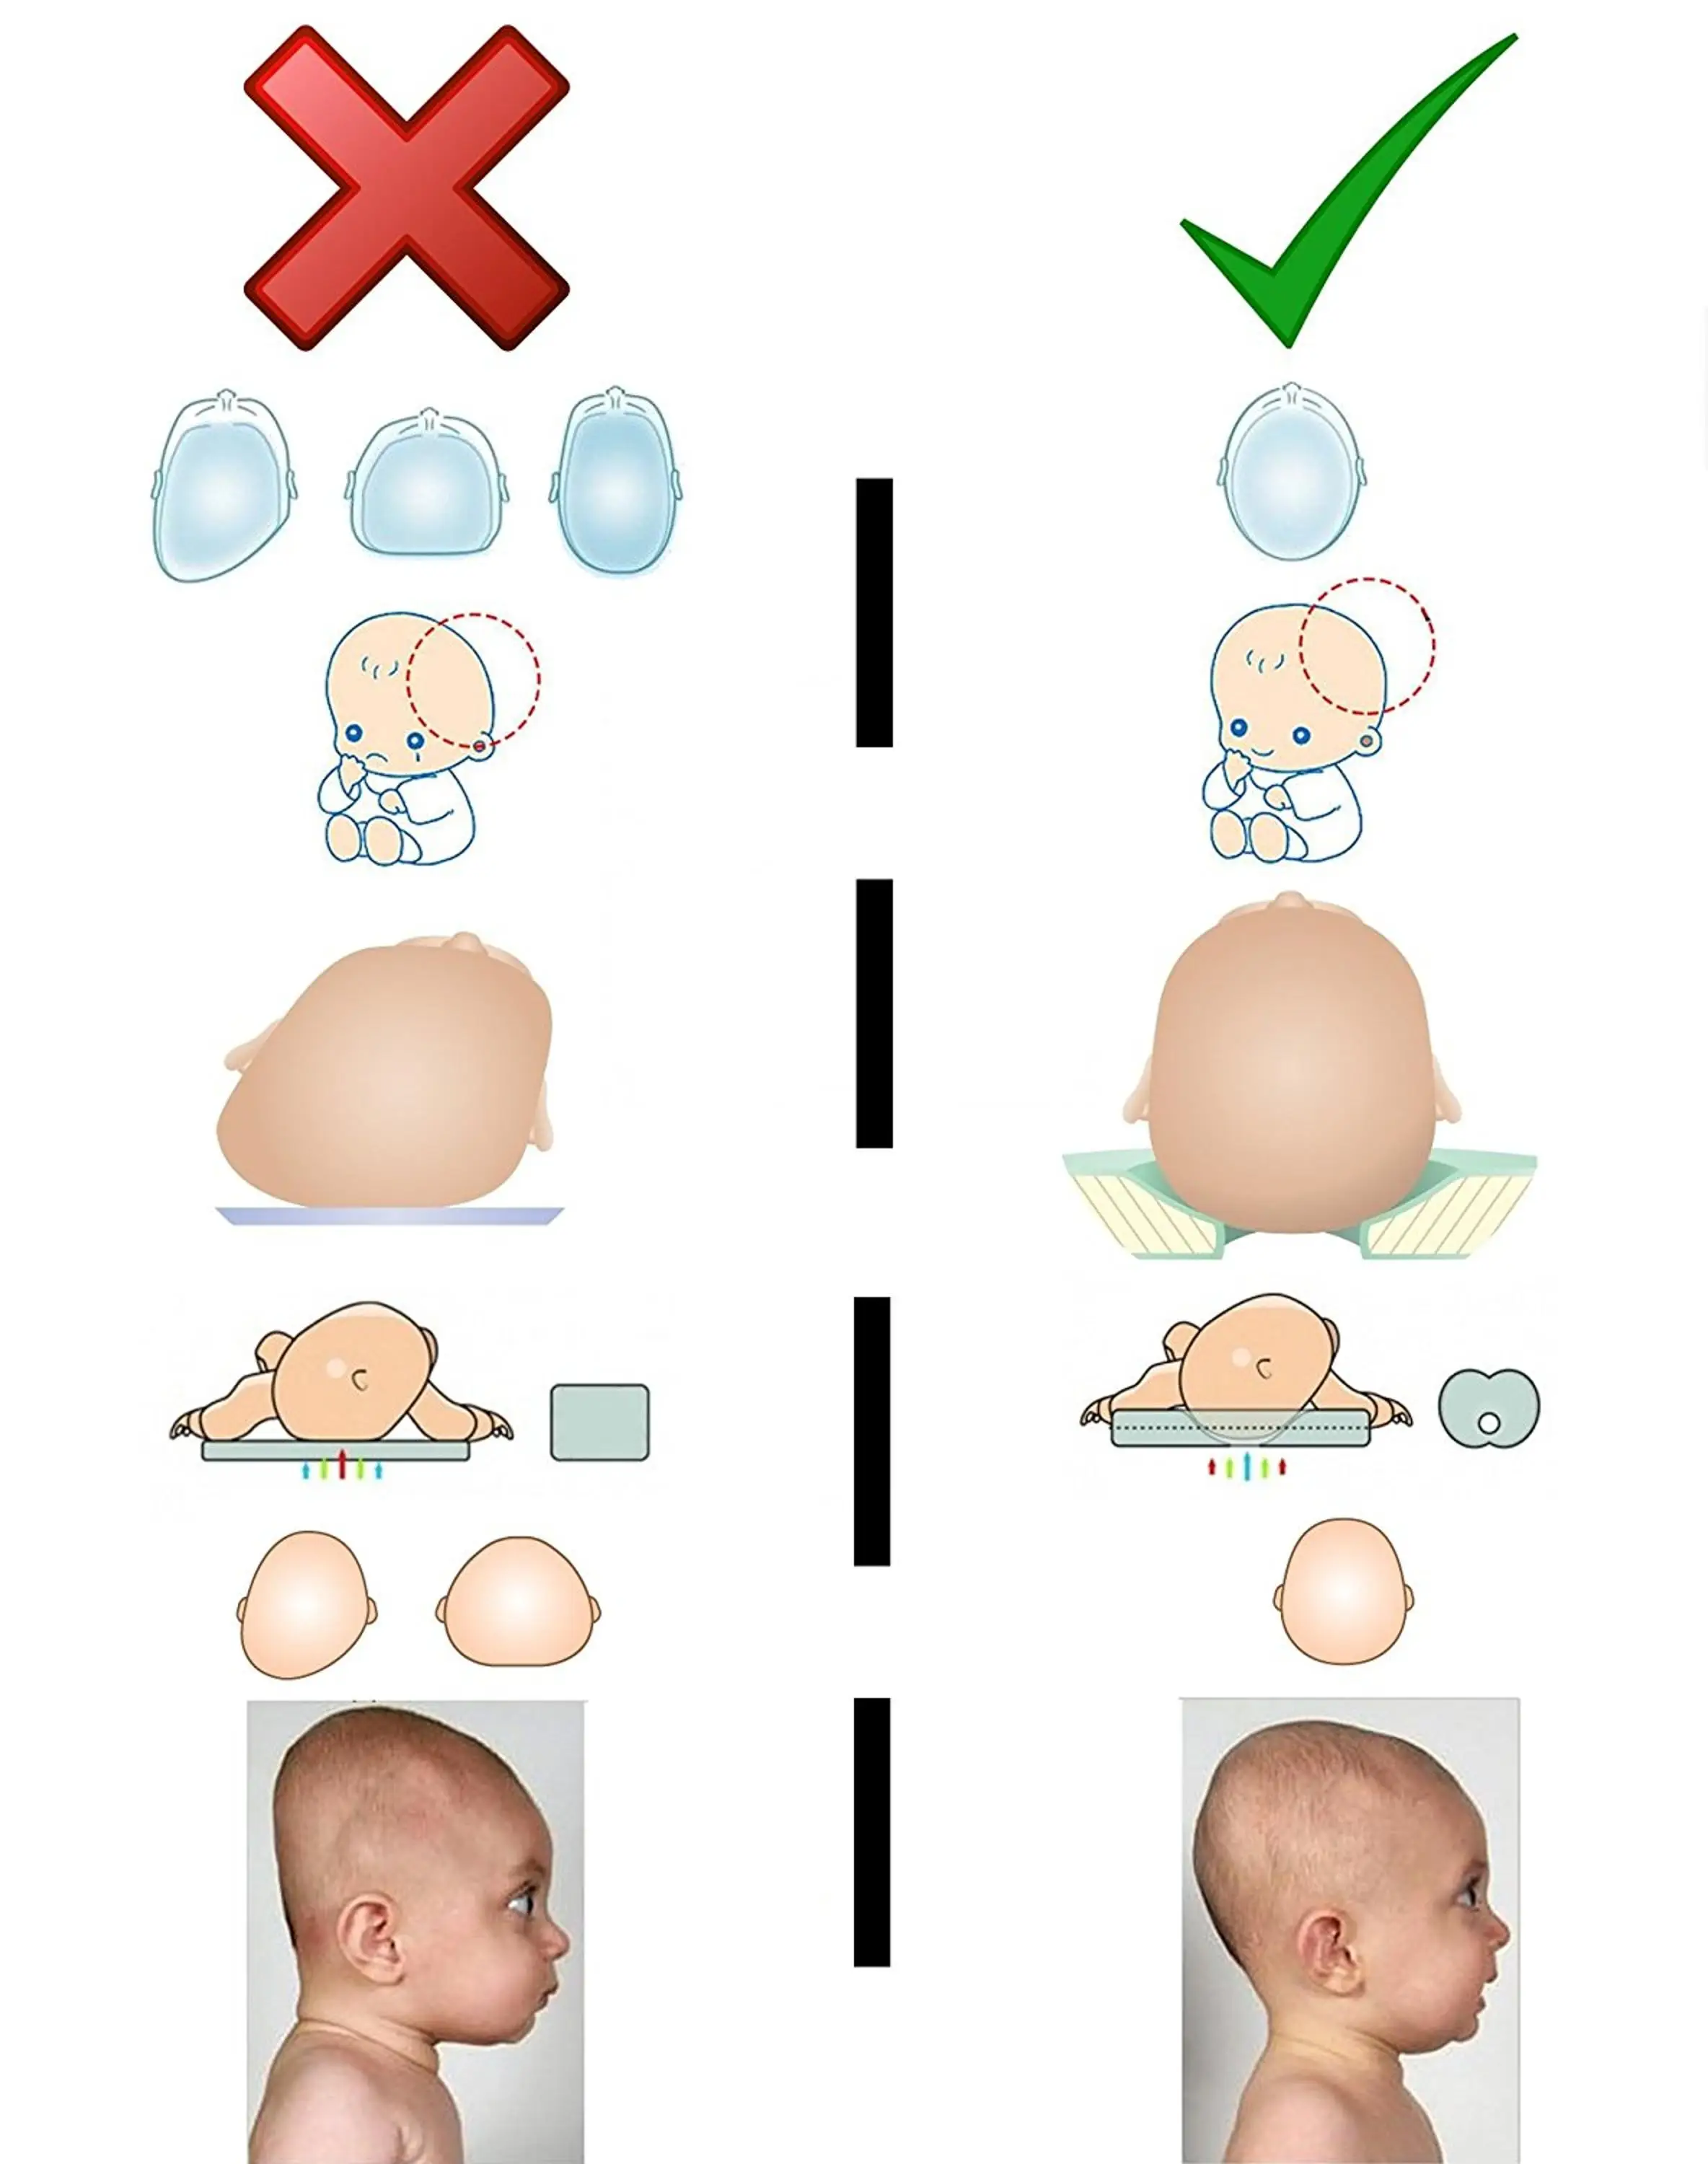 Babykissen zum Schlafen Kopfformendes Kopfkissen Verhindern Flat Head Syndrom Memory Foam Neugeborenen Kissen Geeignet f/ür 0-2 Jahre